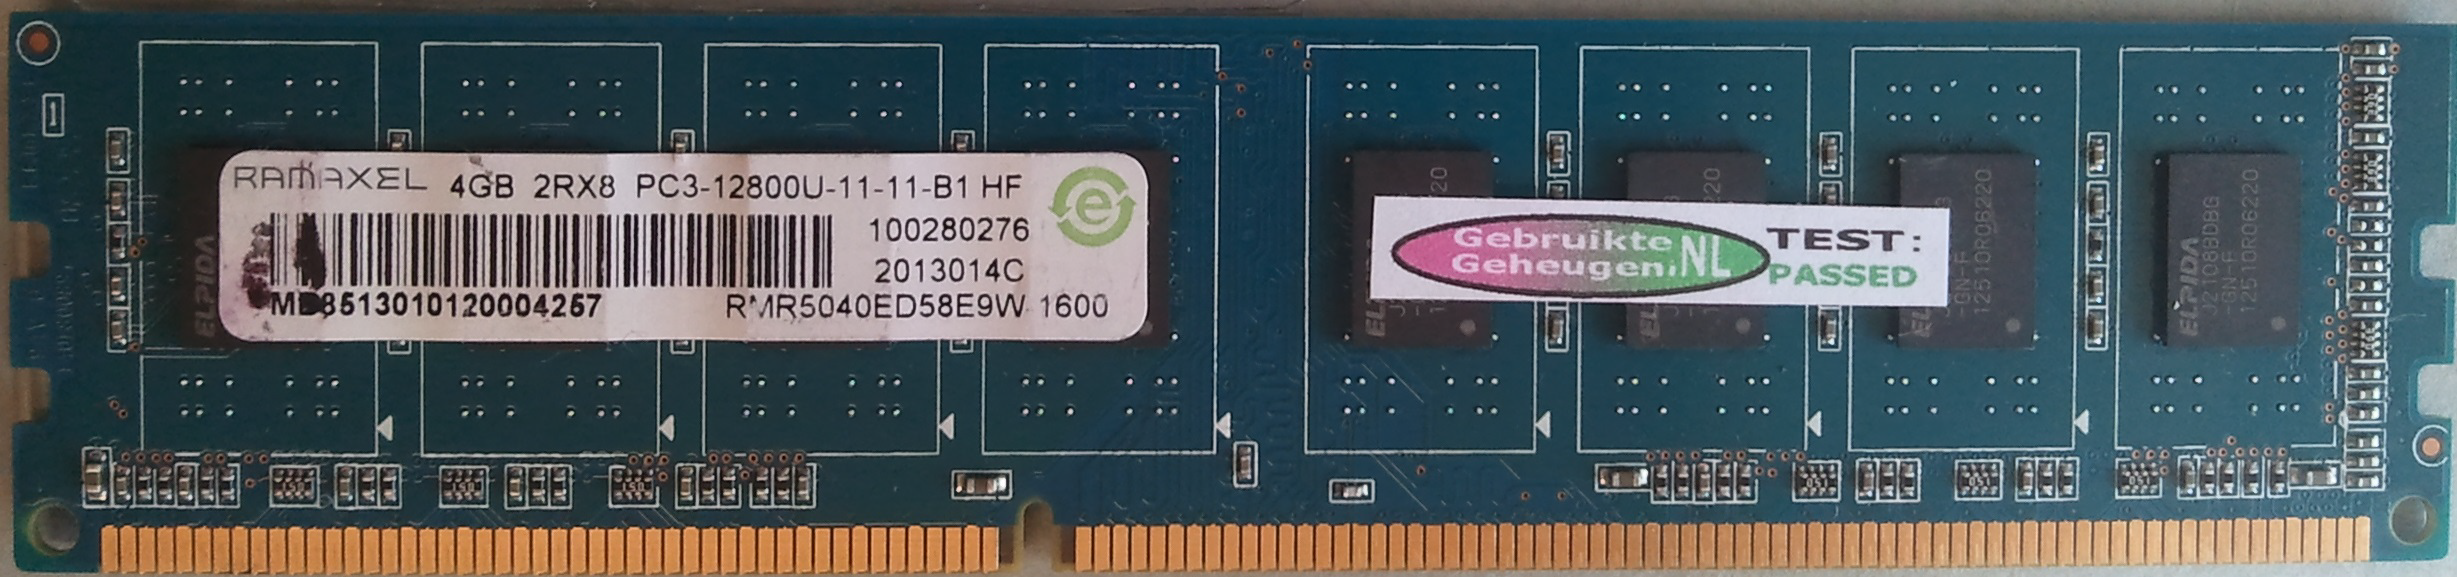 4GB 2Rx8 PC3-12800U-11-11-B1 HF